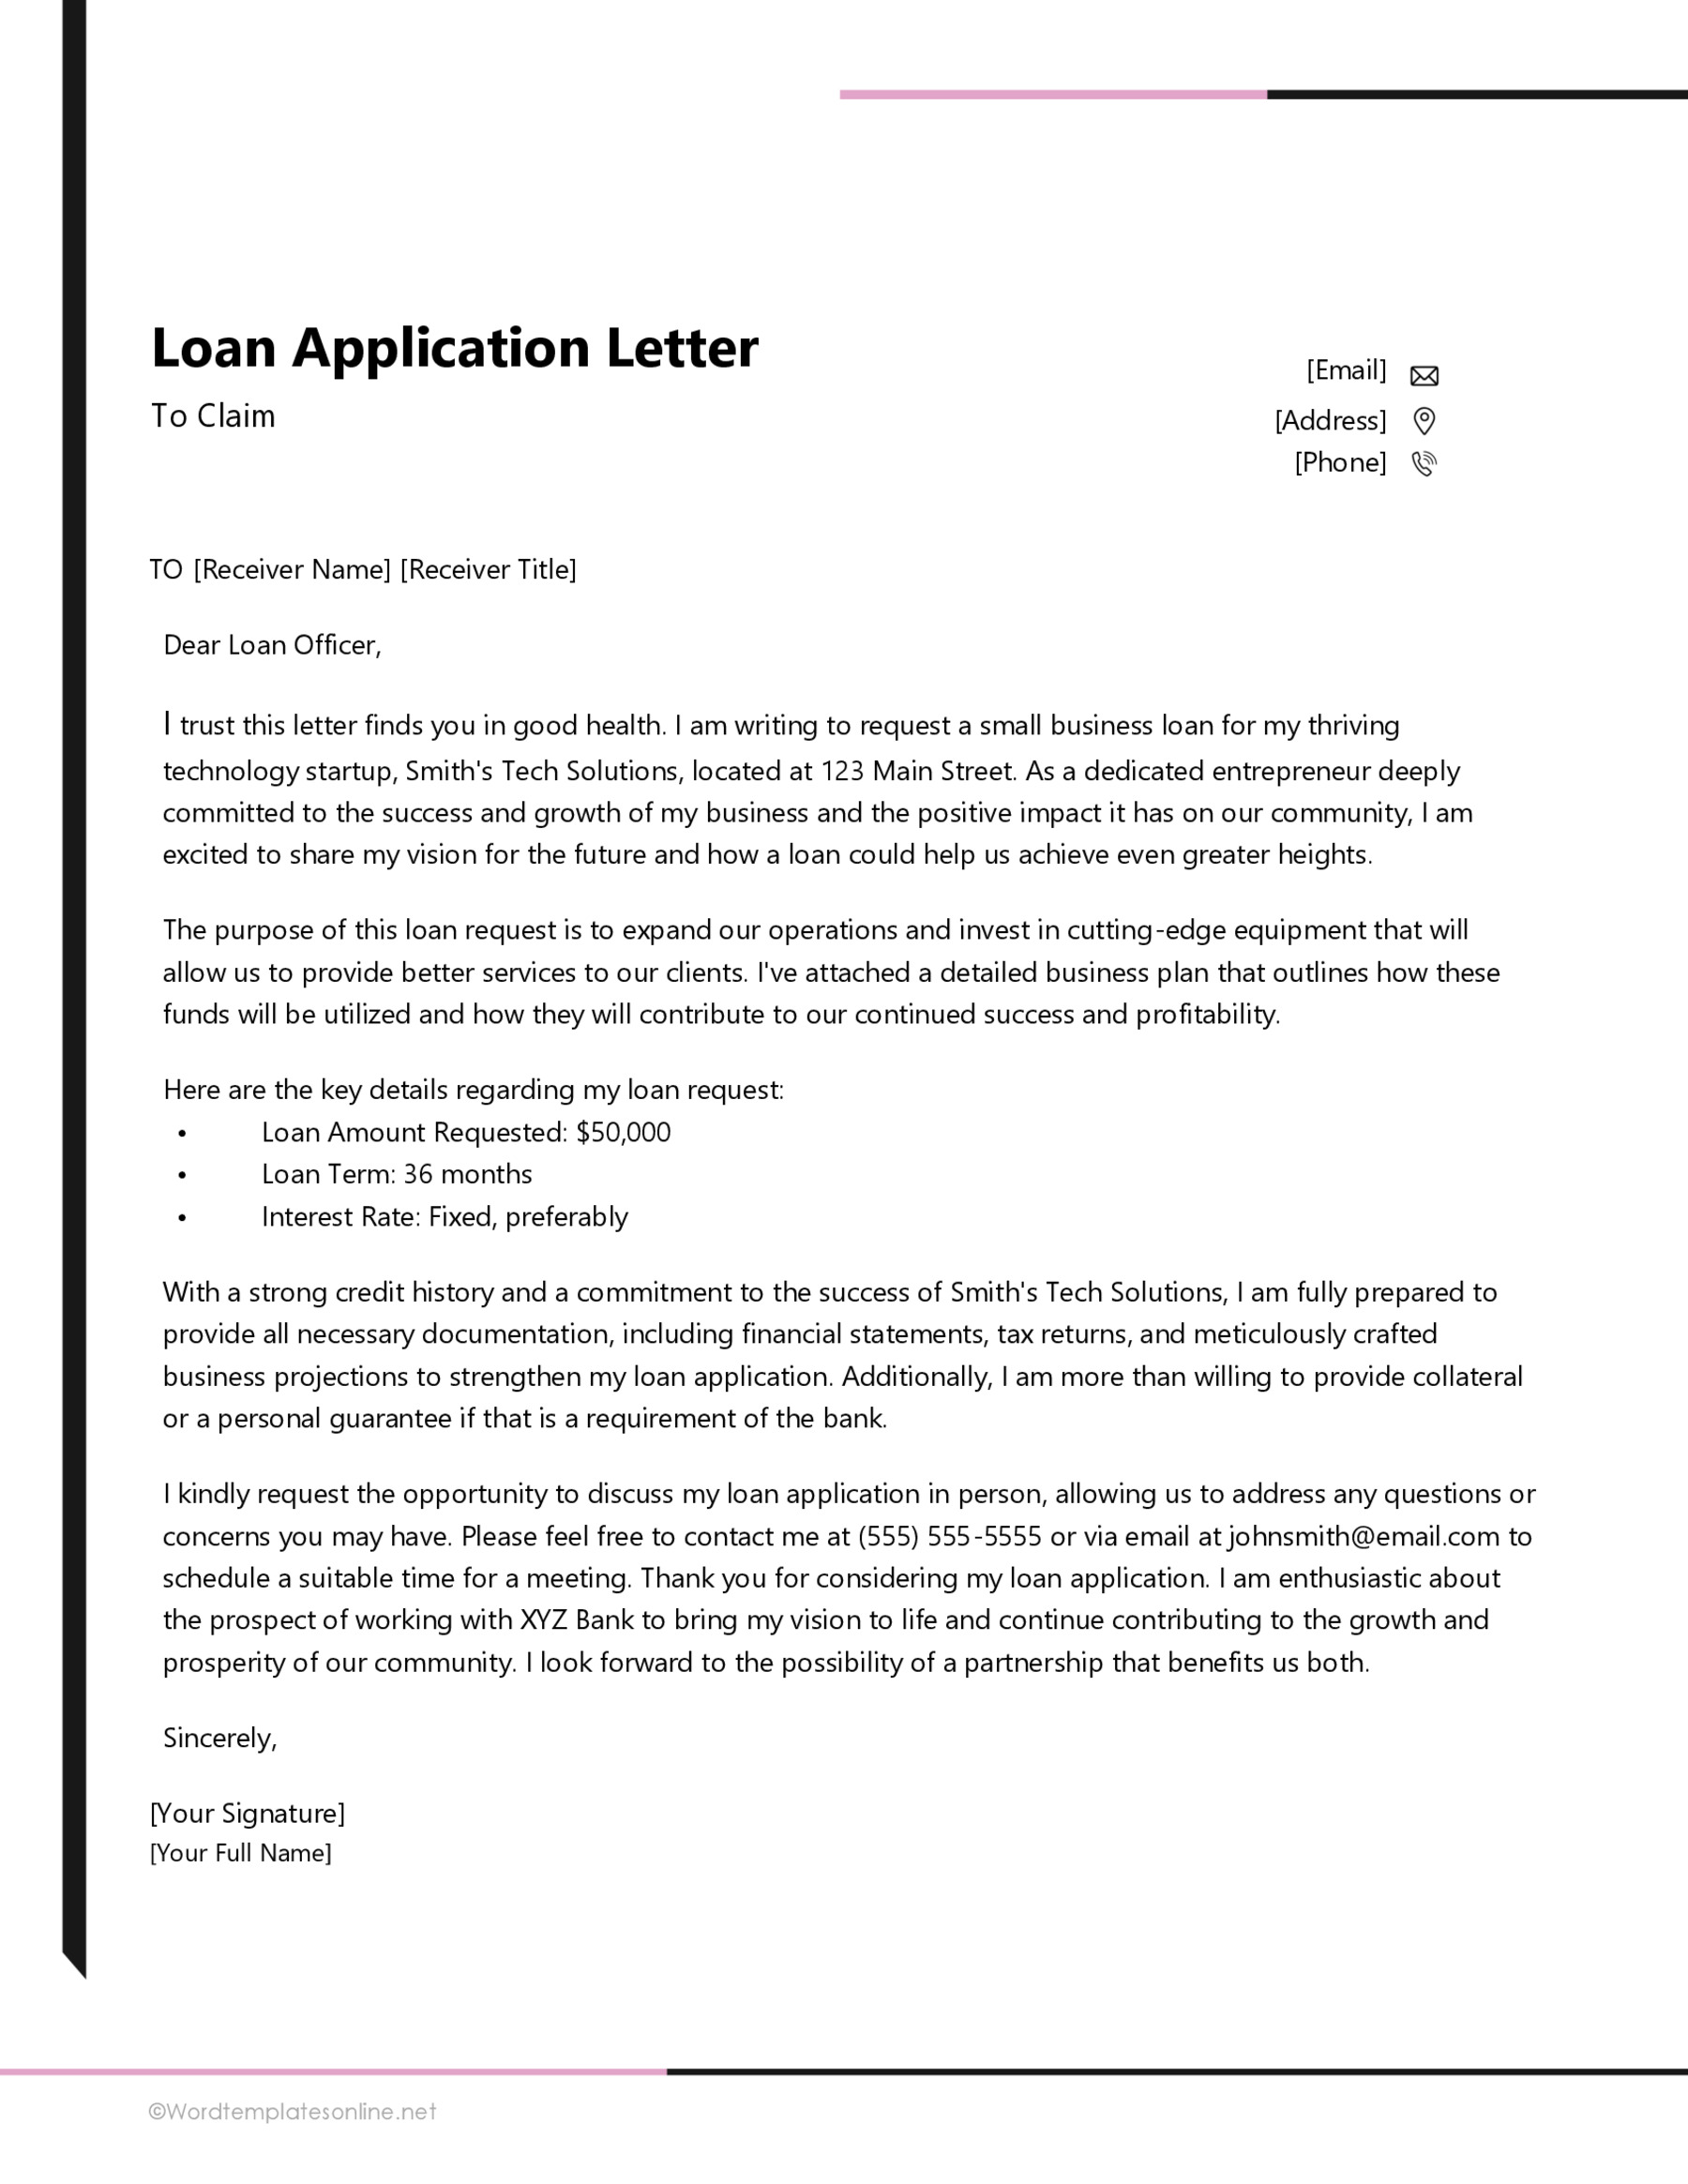 Loan Application Letter in Word Format